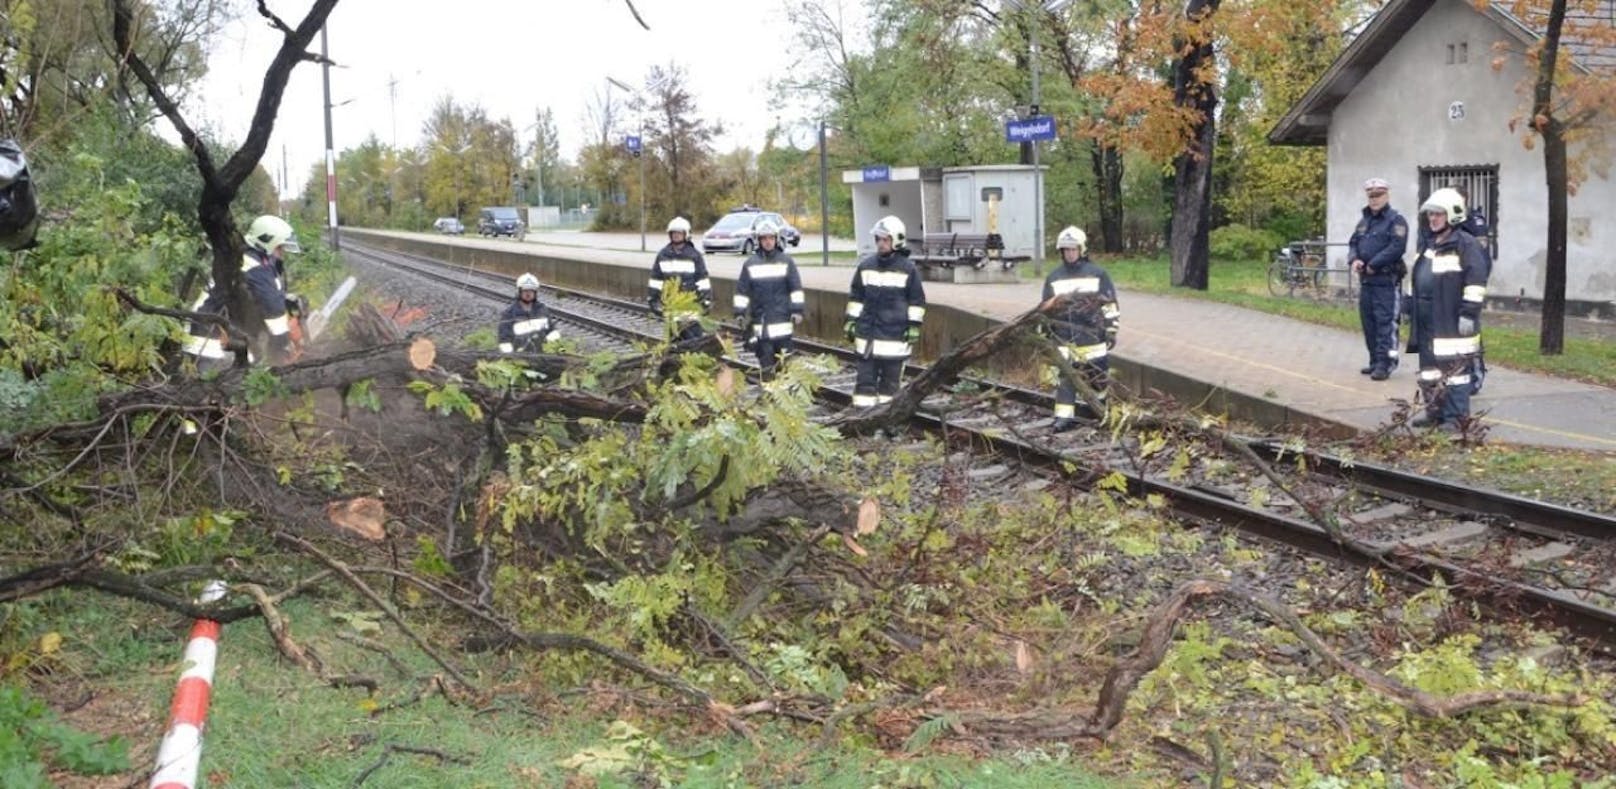 Heftiger Sturm: Baum fällt auf Gleise - Züge gestoppt